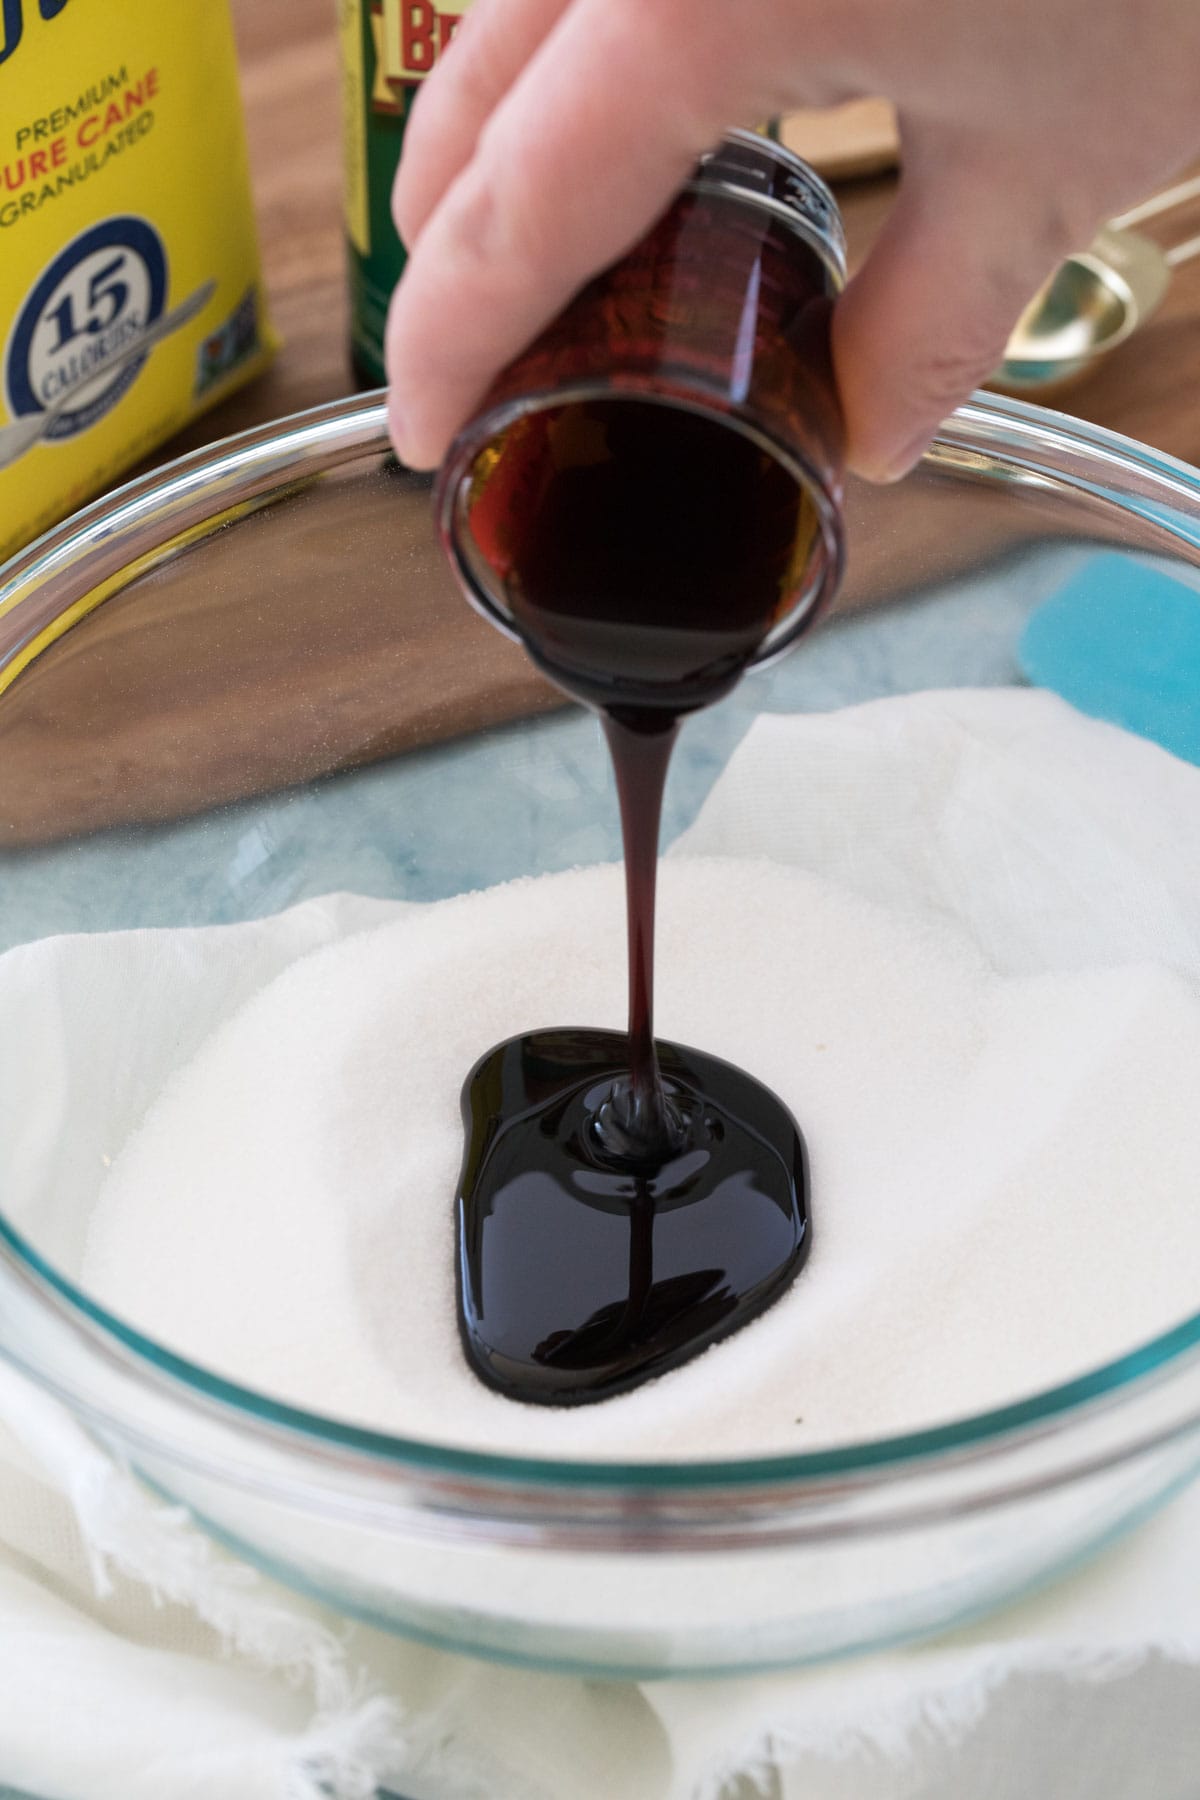 Pouring molasses into white sugar